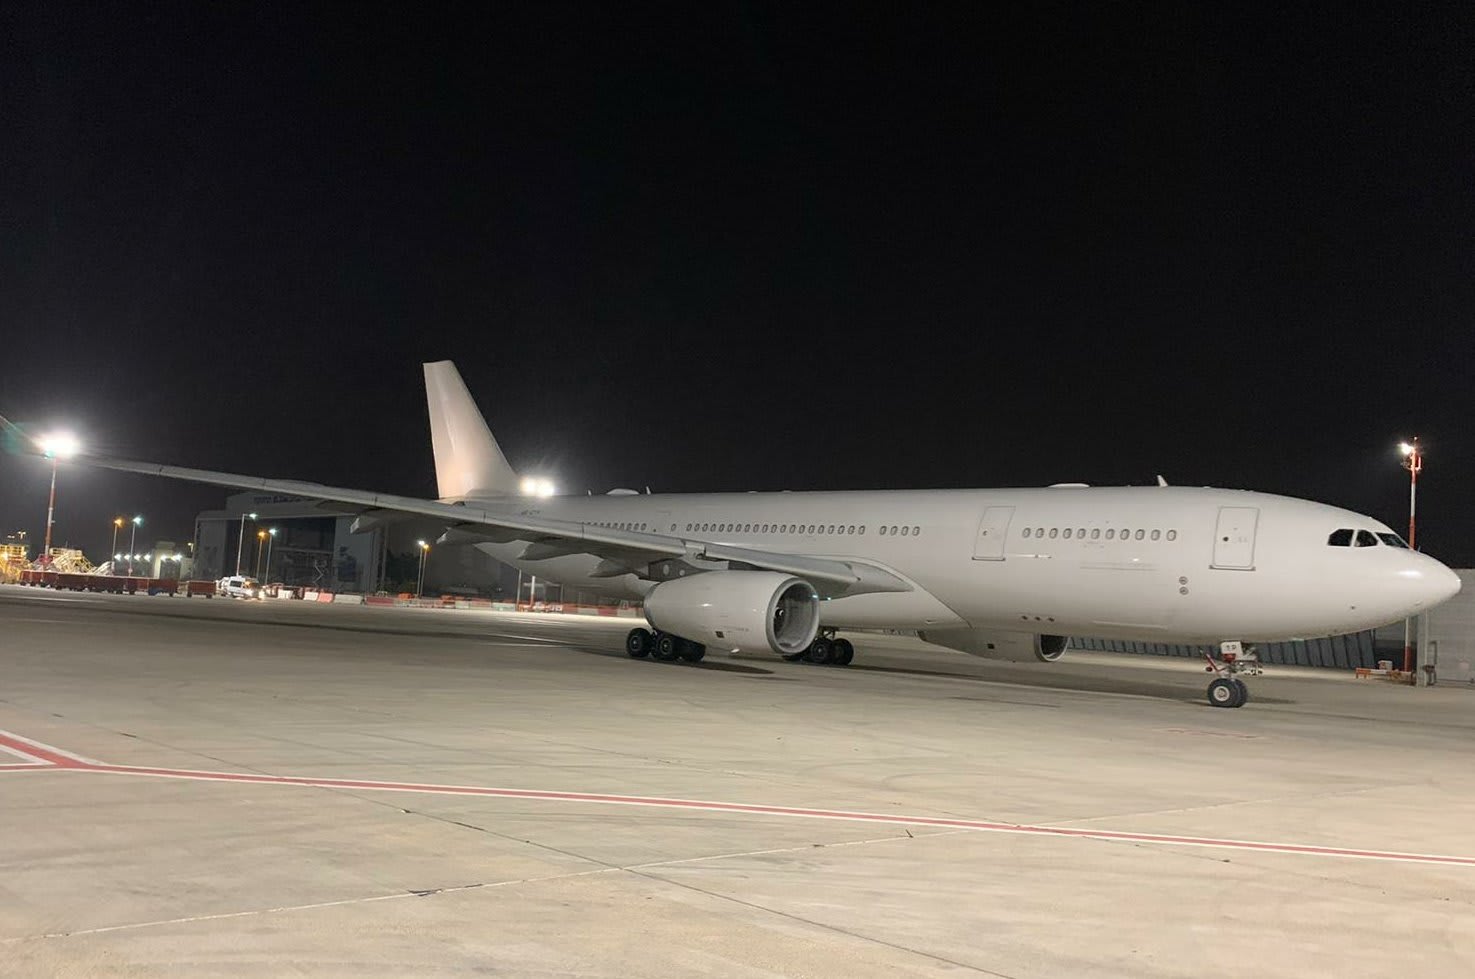 للمرة الأولى.. طائرة إماراتية تهبط في مطار إسرائيلي لتوصيل مساعدات إلى الفلسطينيين